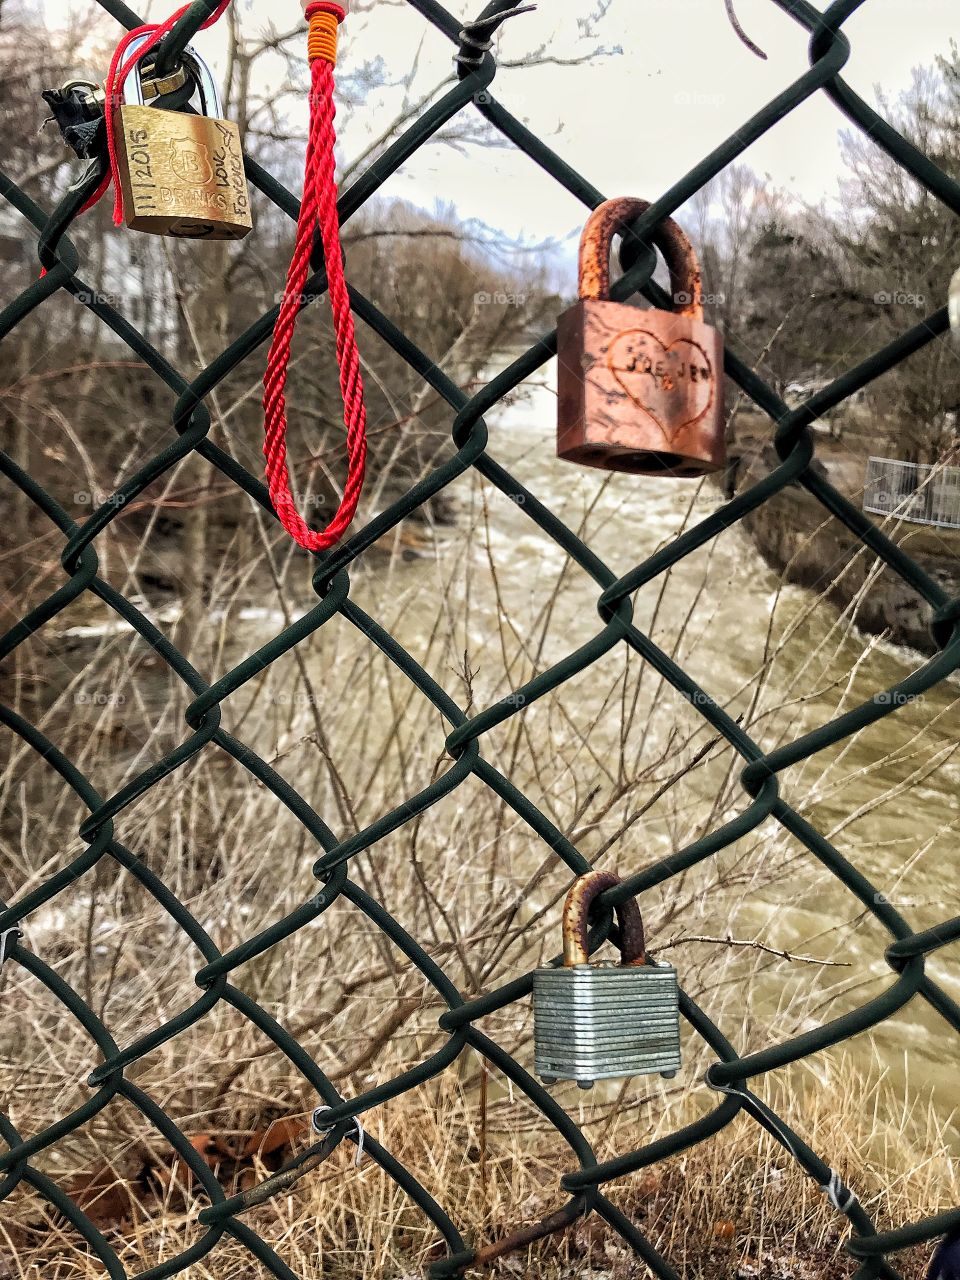 Locks on a fence